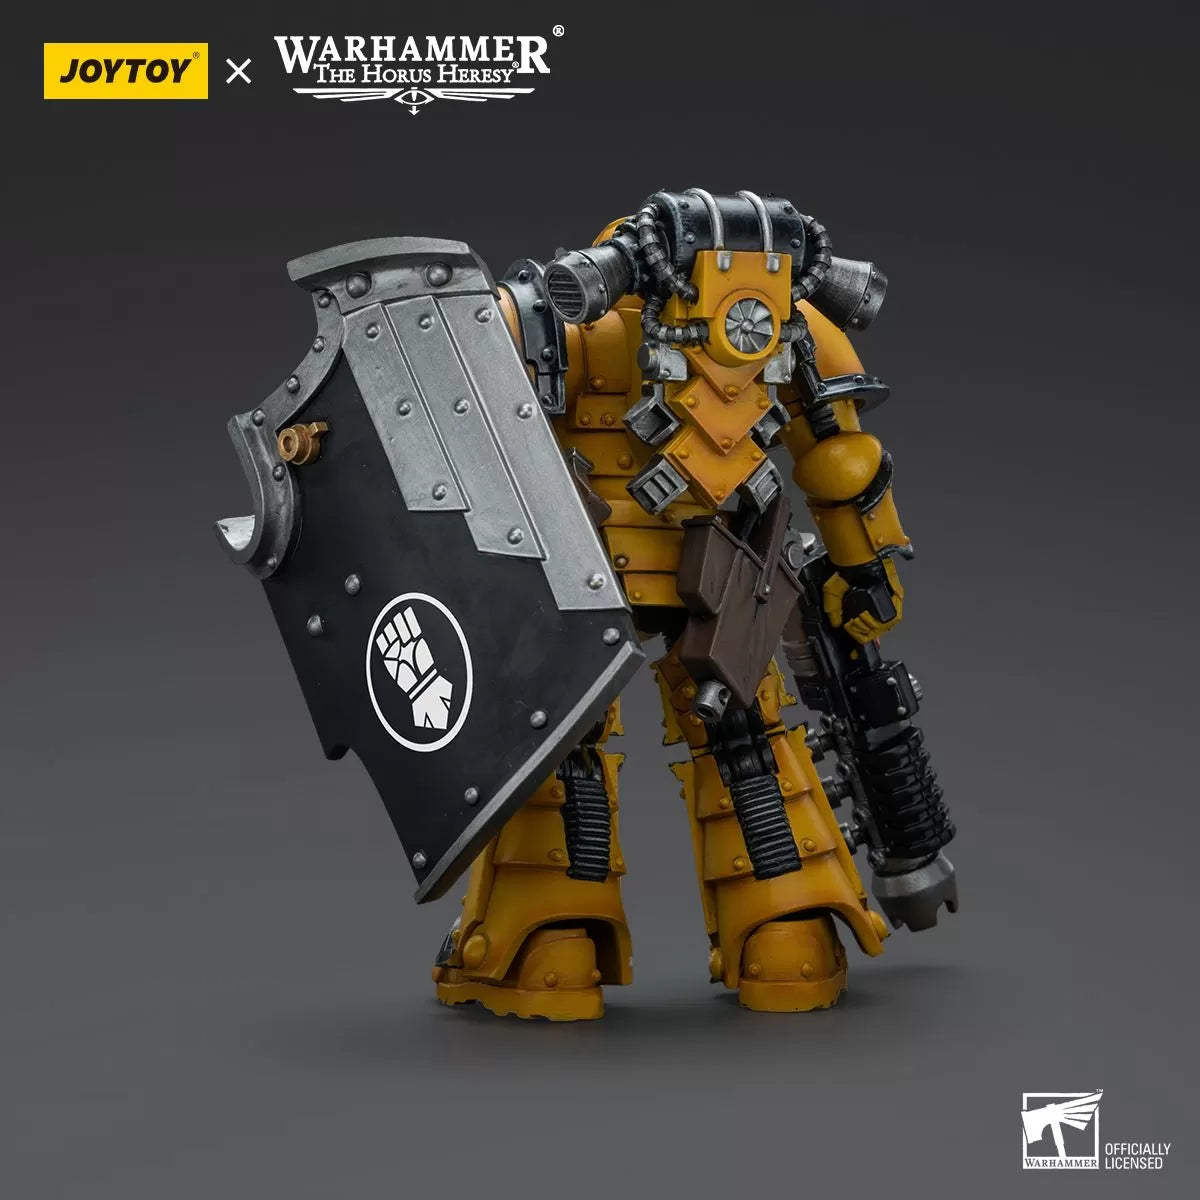 Warhammer Collectibles: 1/18 Scale Imperial Fists Legion MkIII Breacher Squad Legion Breacher w Gun - Preorder